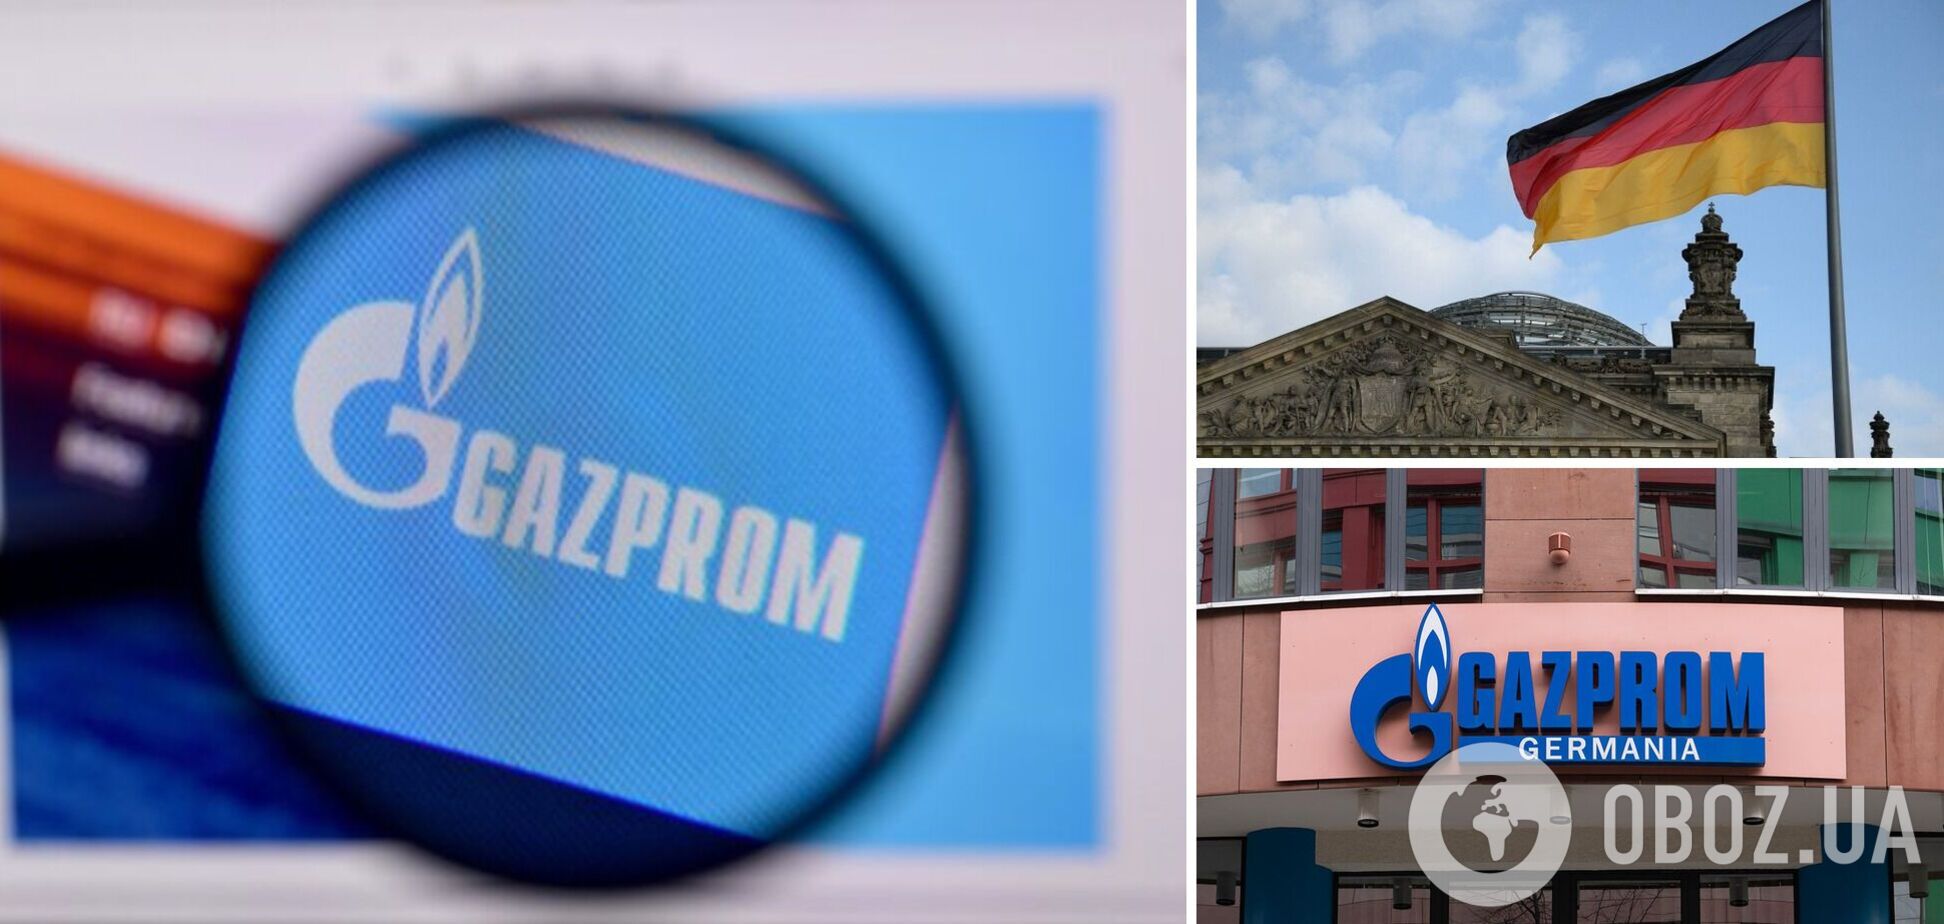 'Газпром' потребовал от GAZPROM Germania прекратить использование товарных знаков фирмы